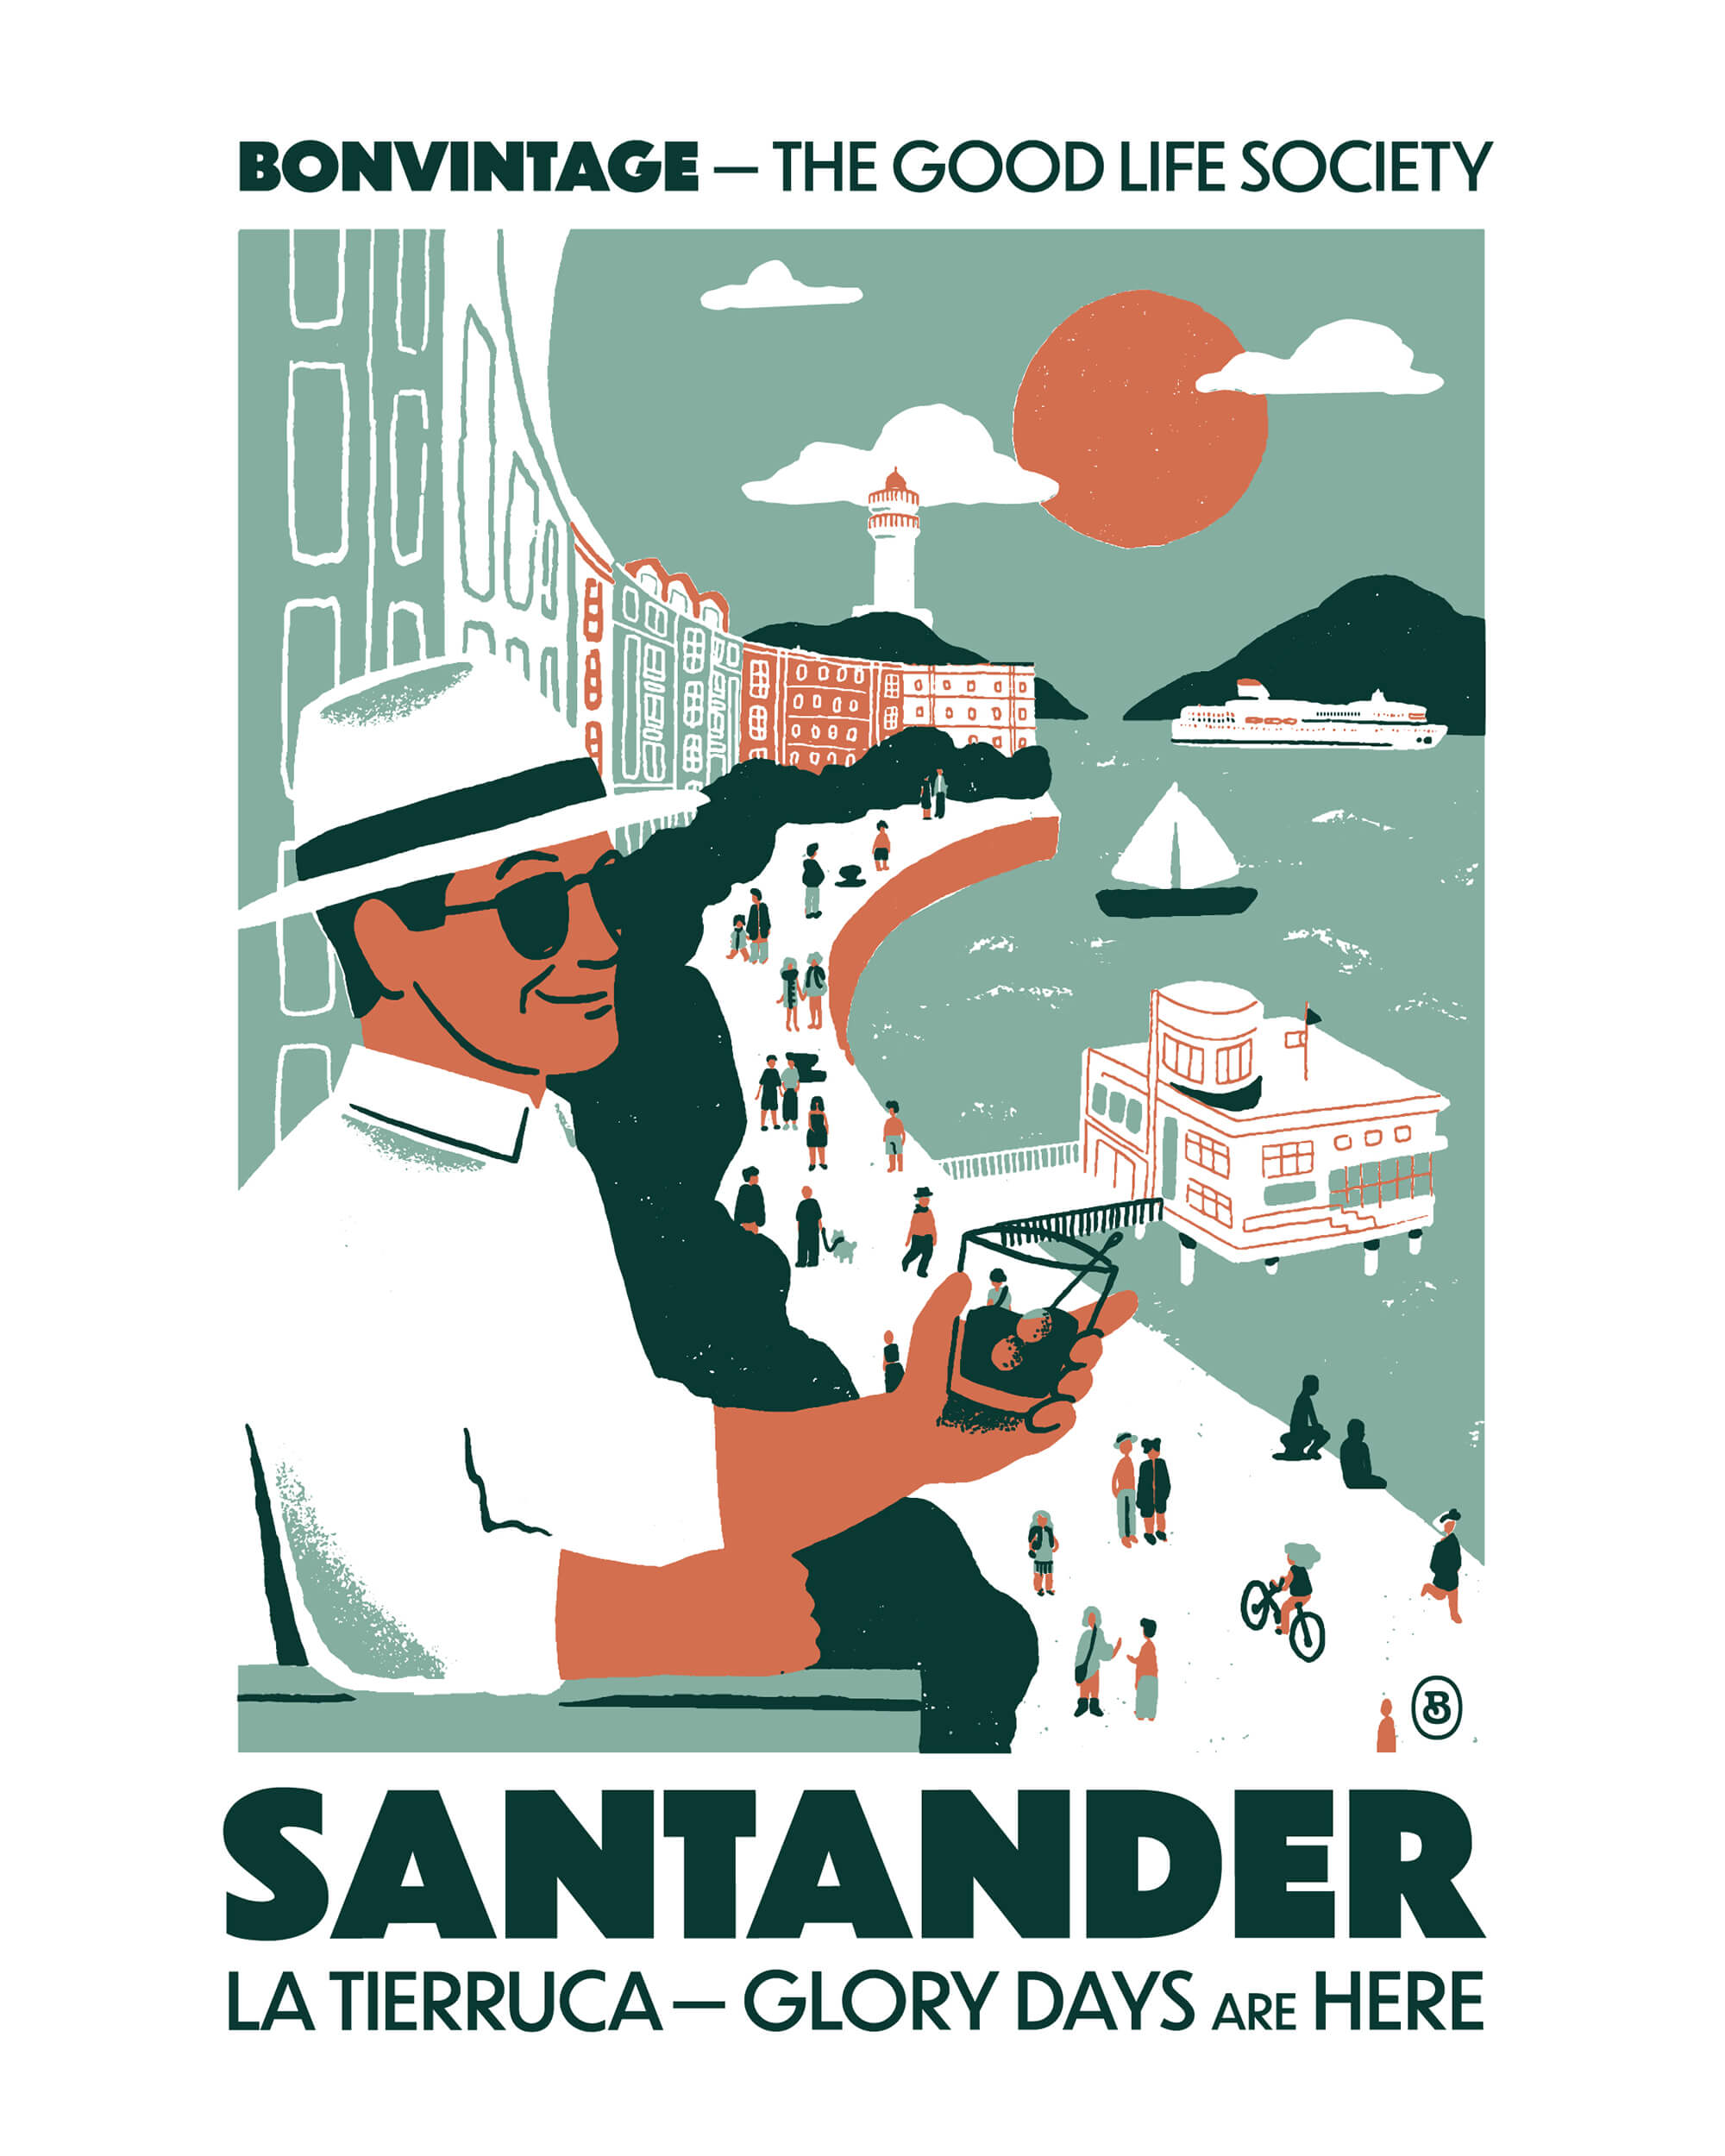 Lámina Santander Vintage BonVintage